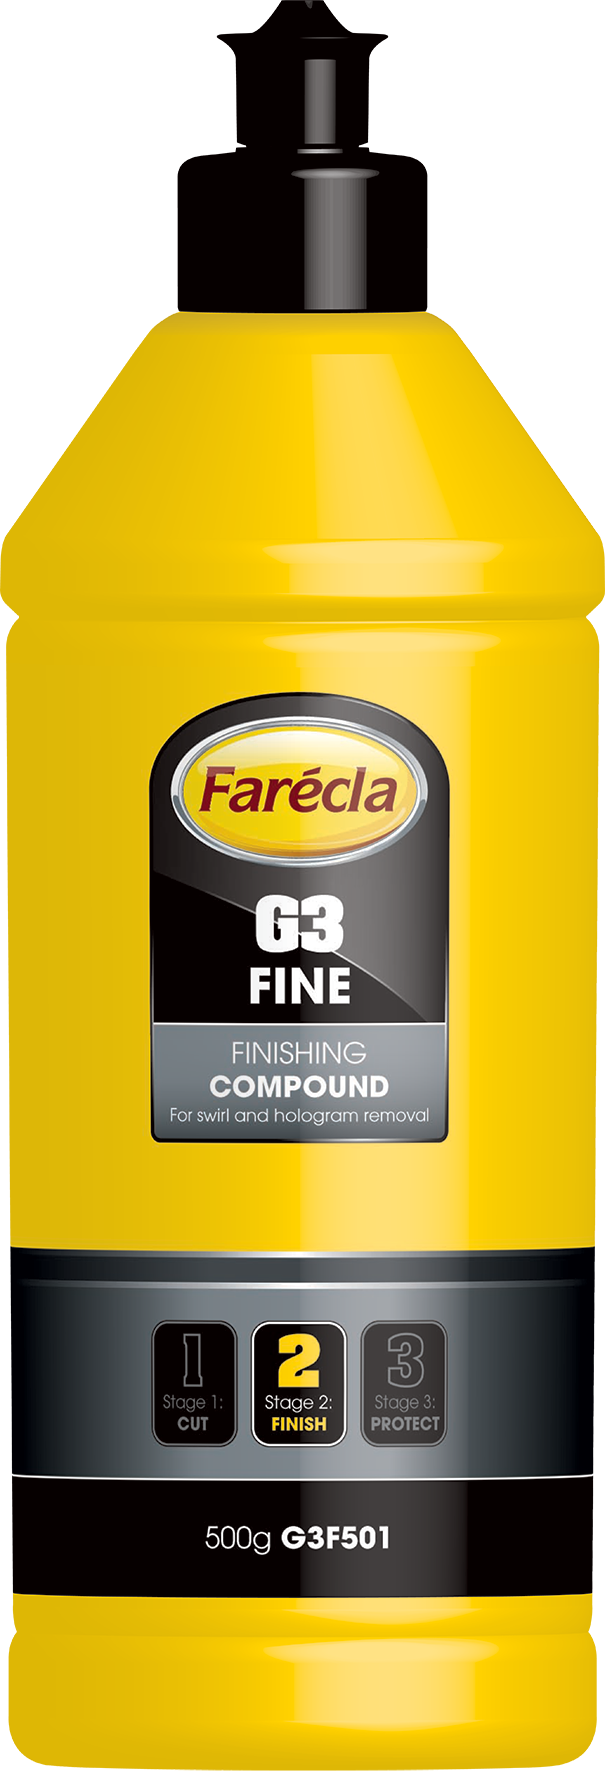 Farecla G3 Fine Finishing Compound 500g